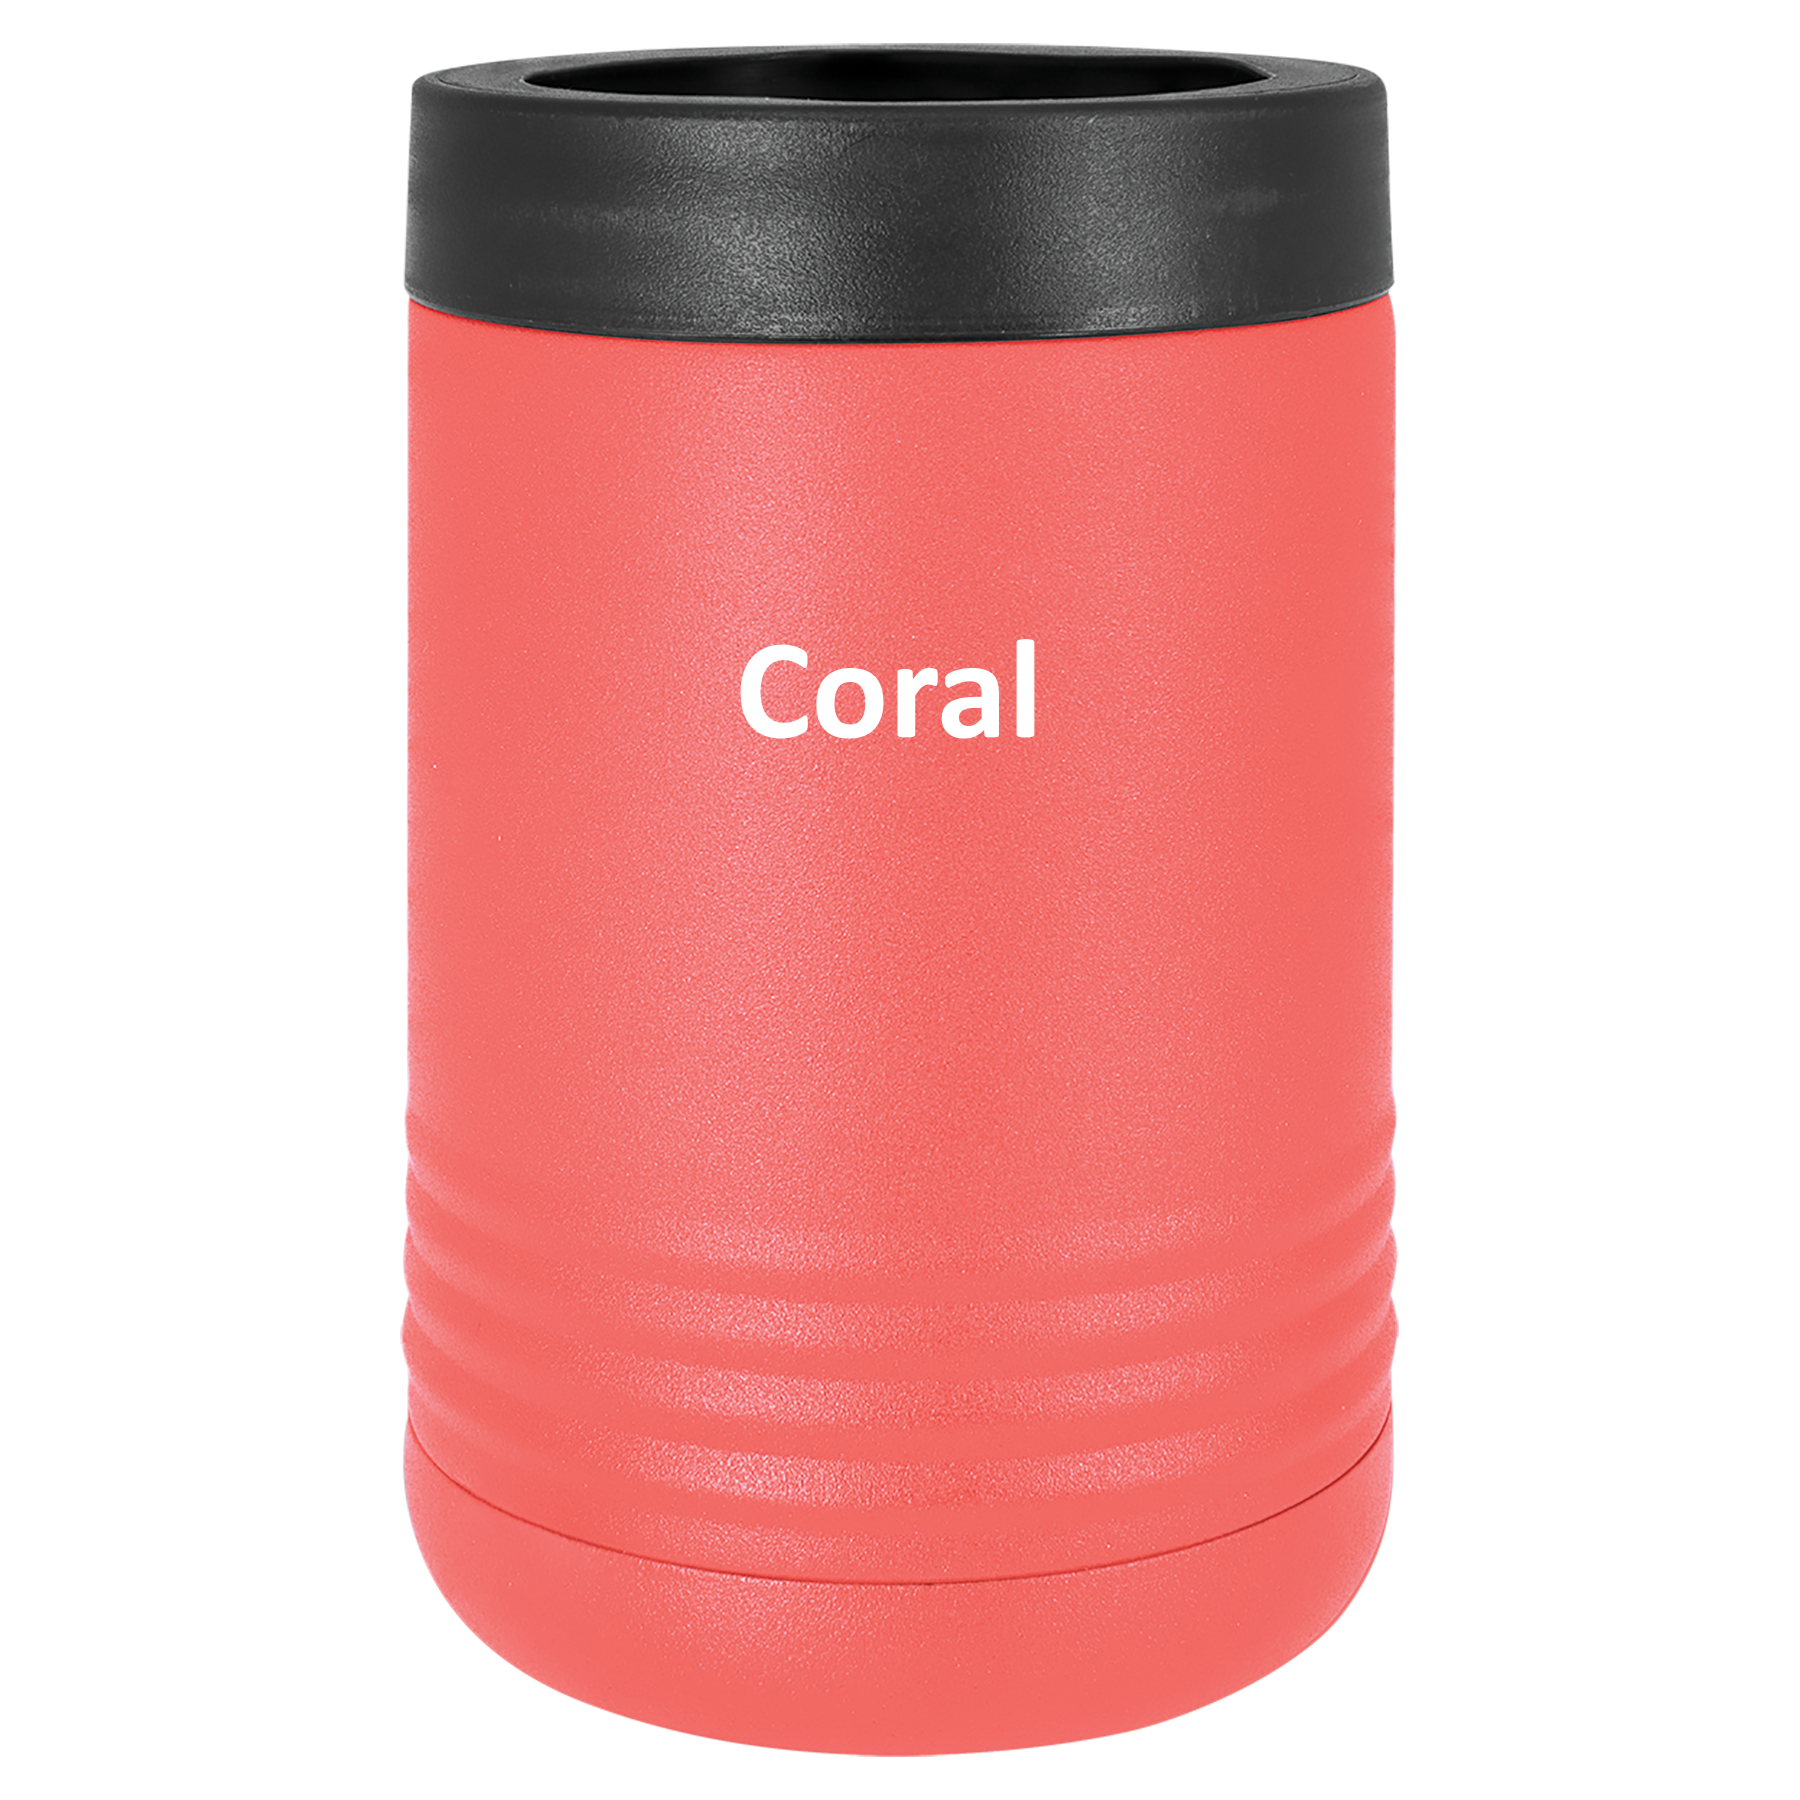 Coral 12oz Beverage Holder